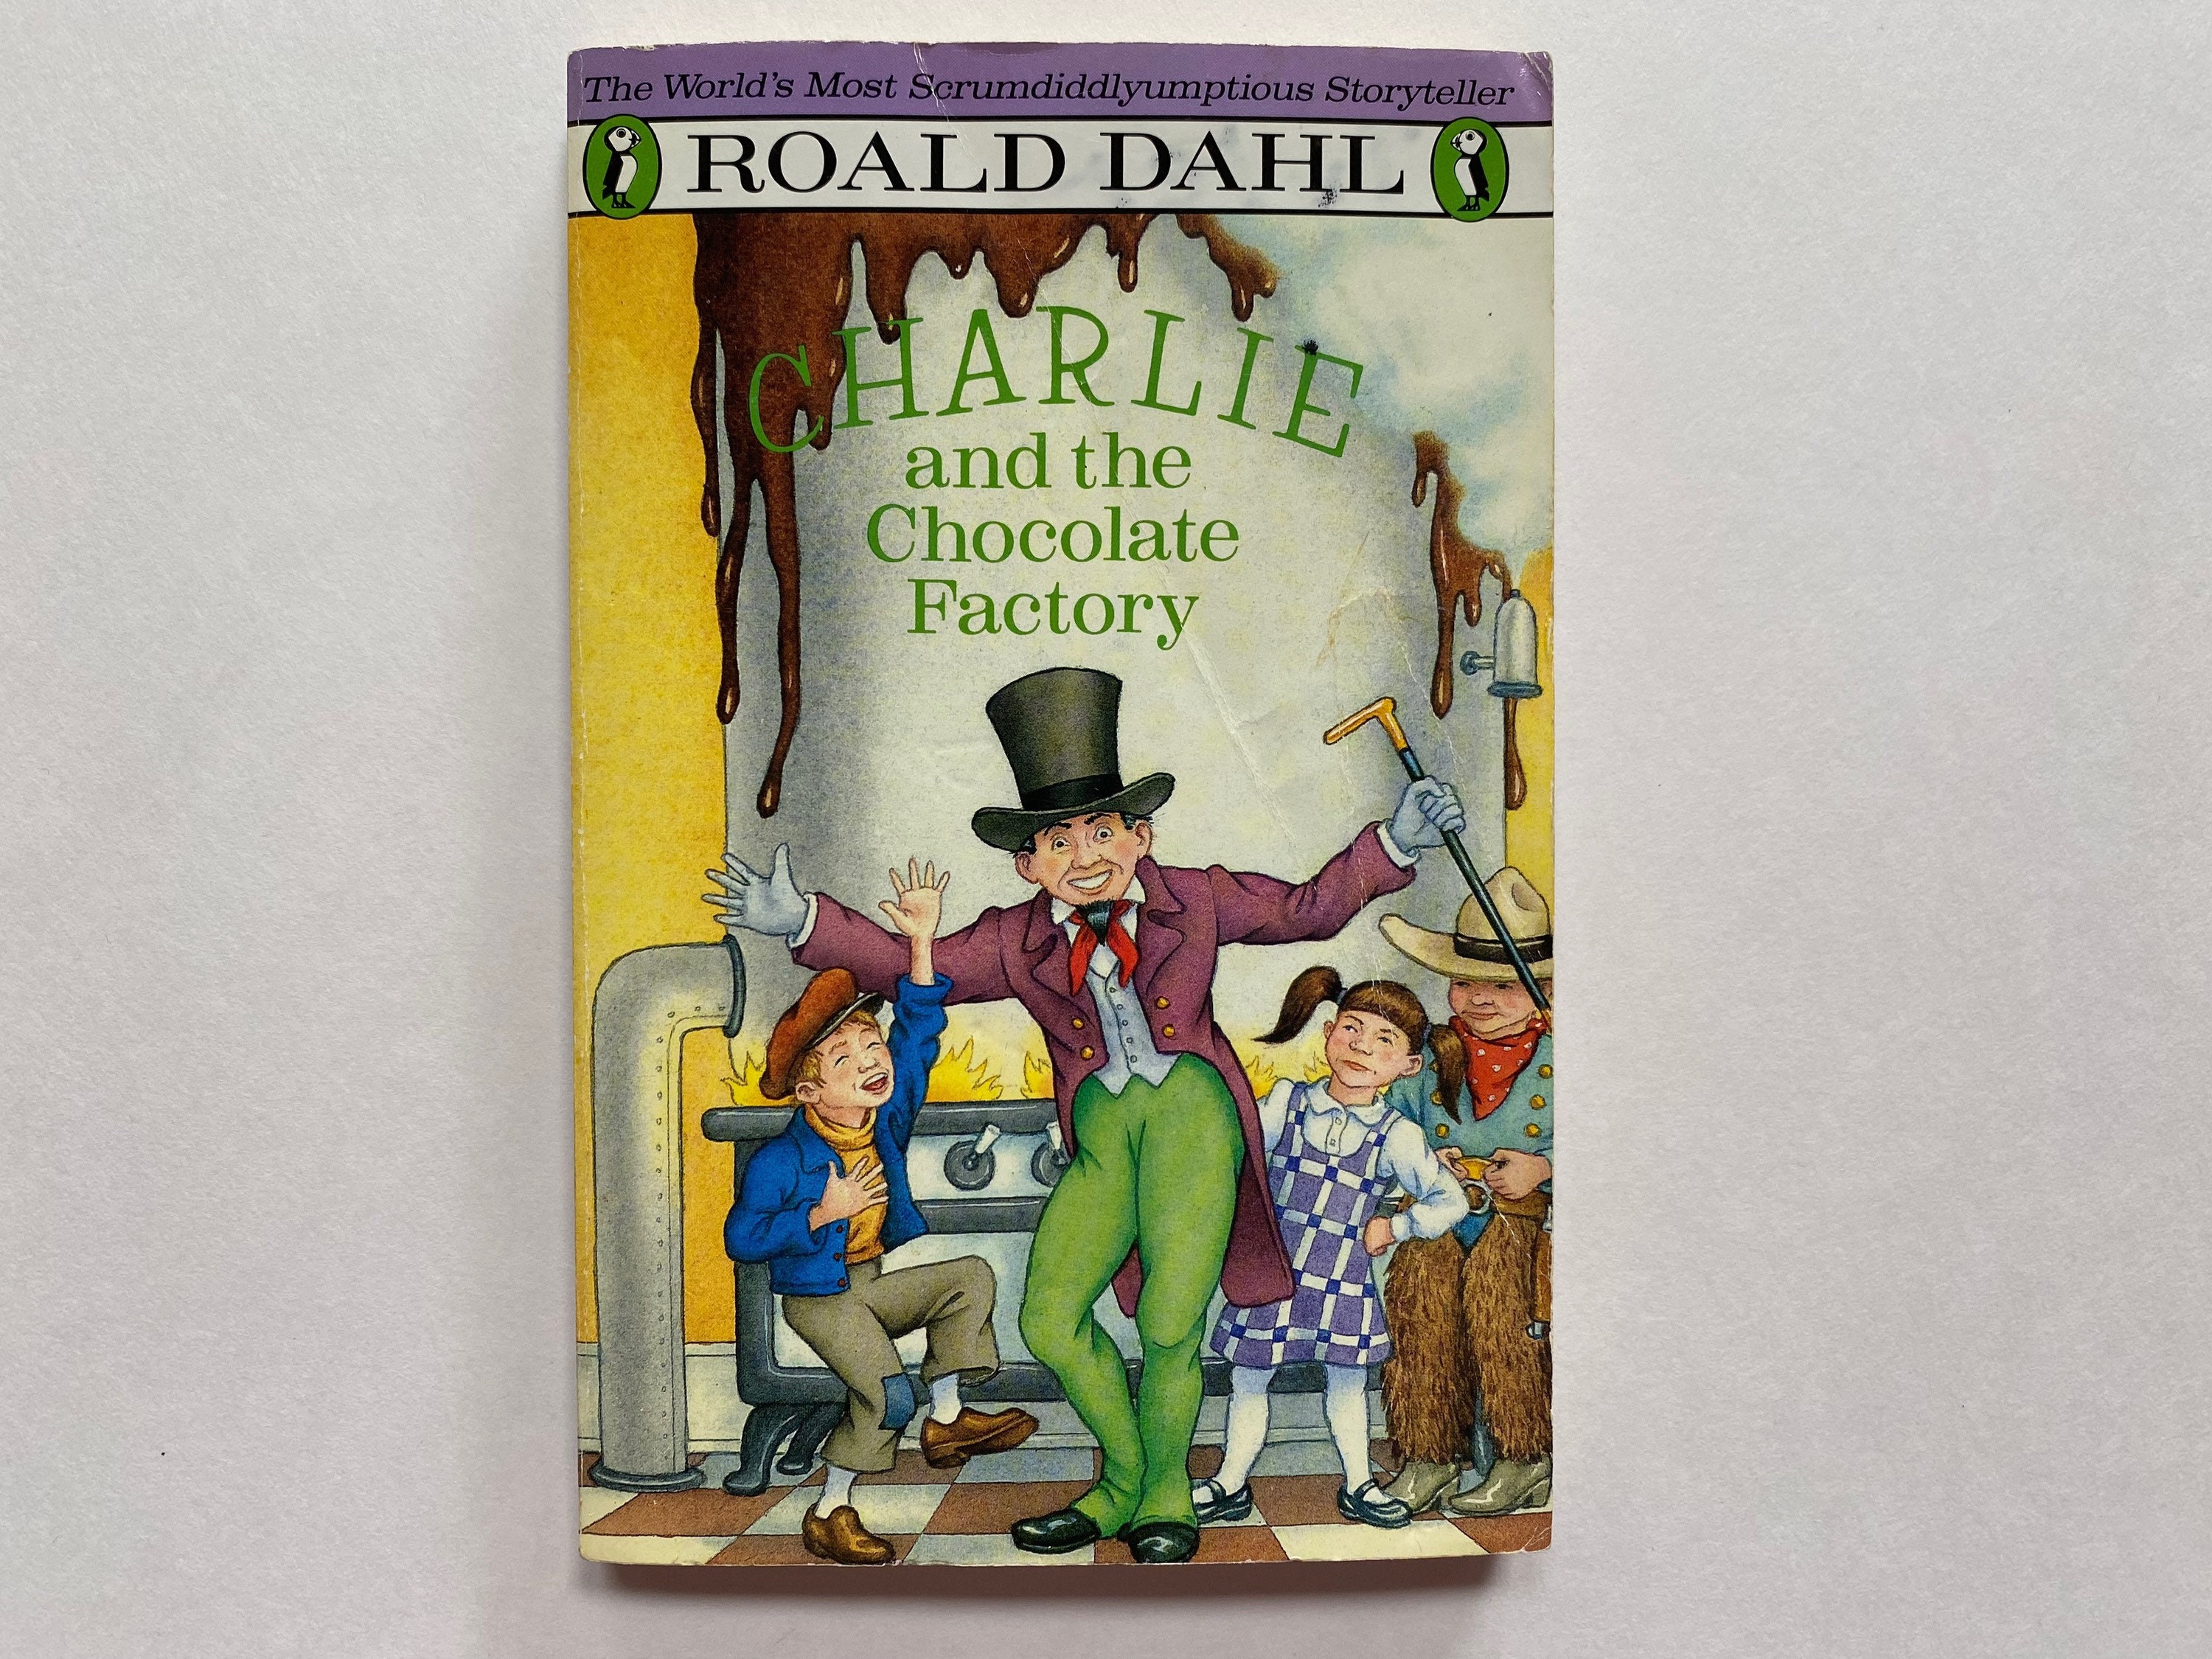 Livres Charlie et la chocolaterie